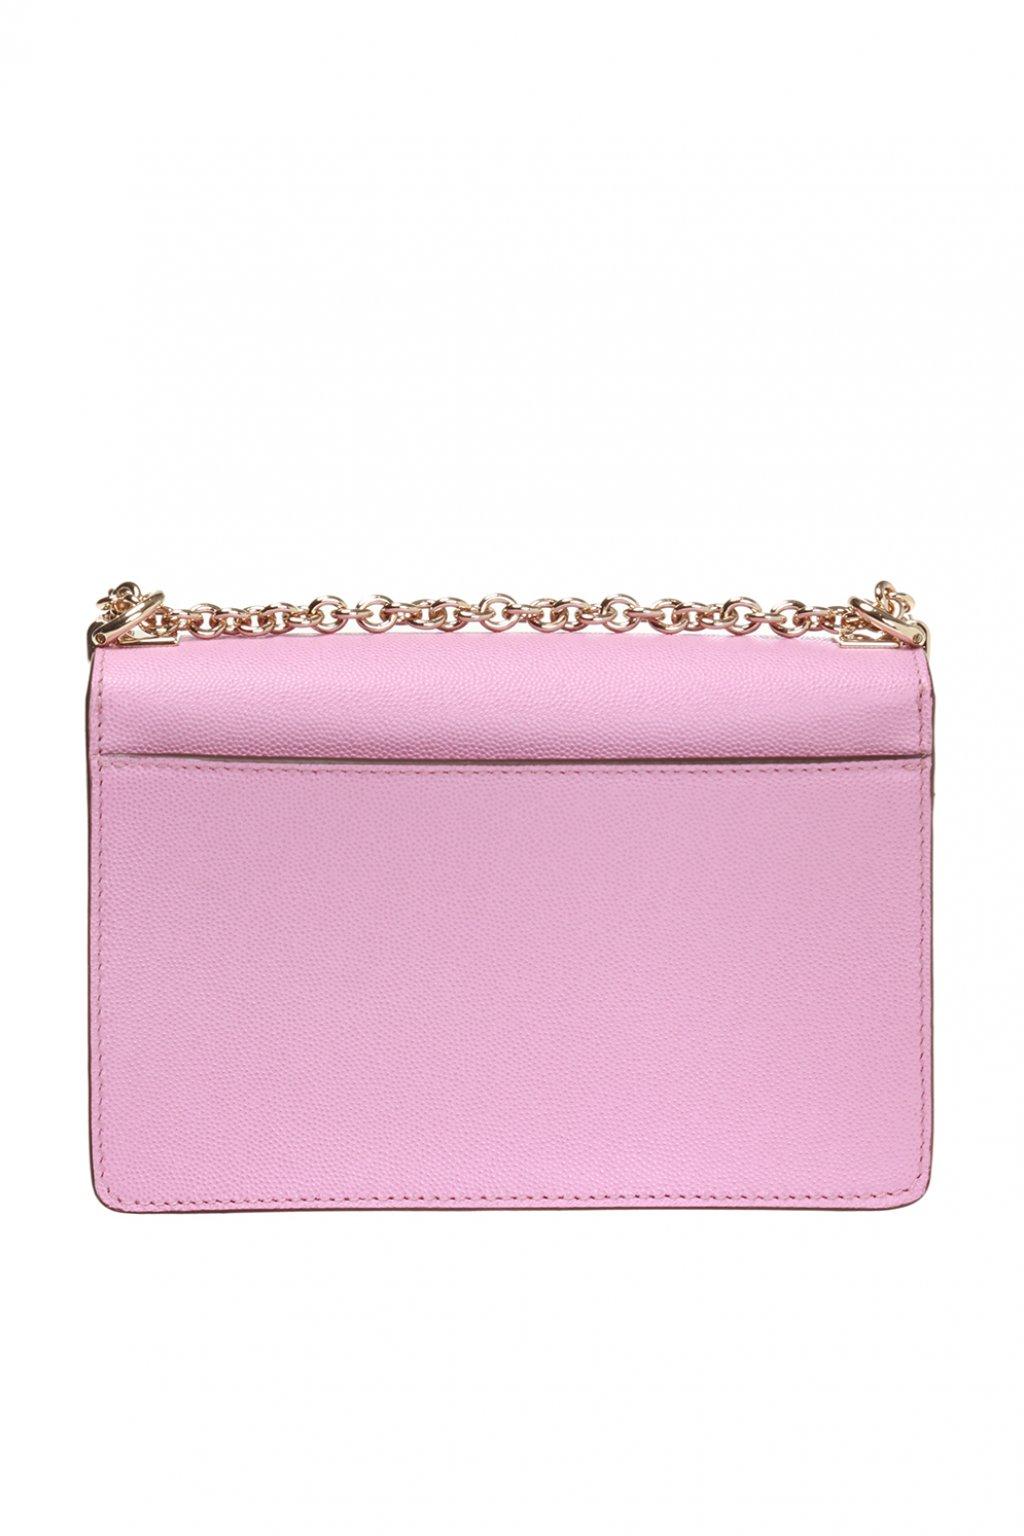 Furla Leather 'mimi' Shoulder Bag in Pink - Lyst